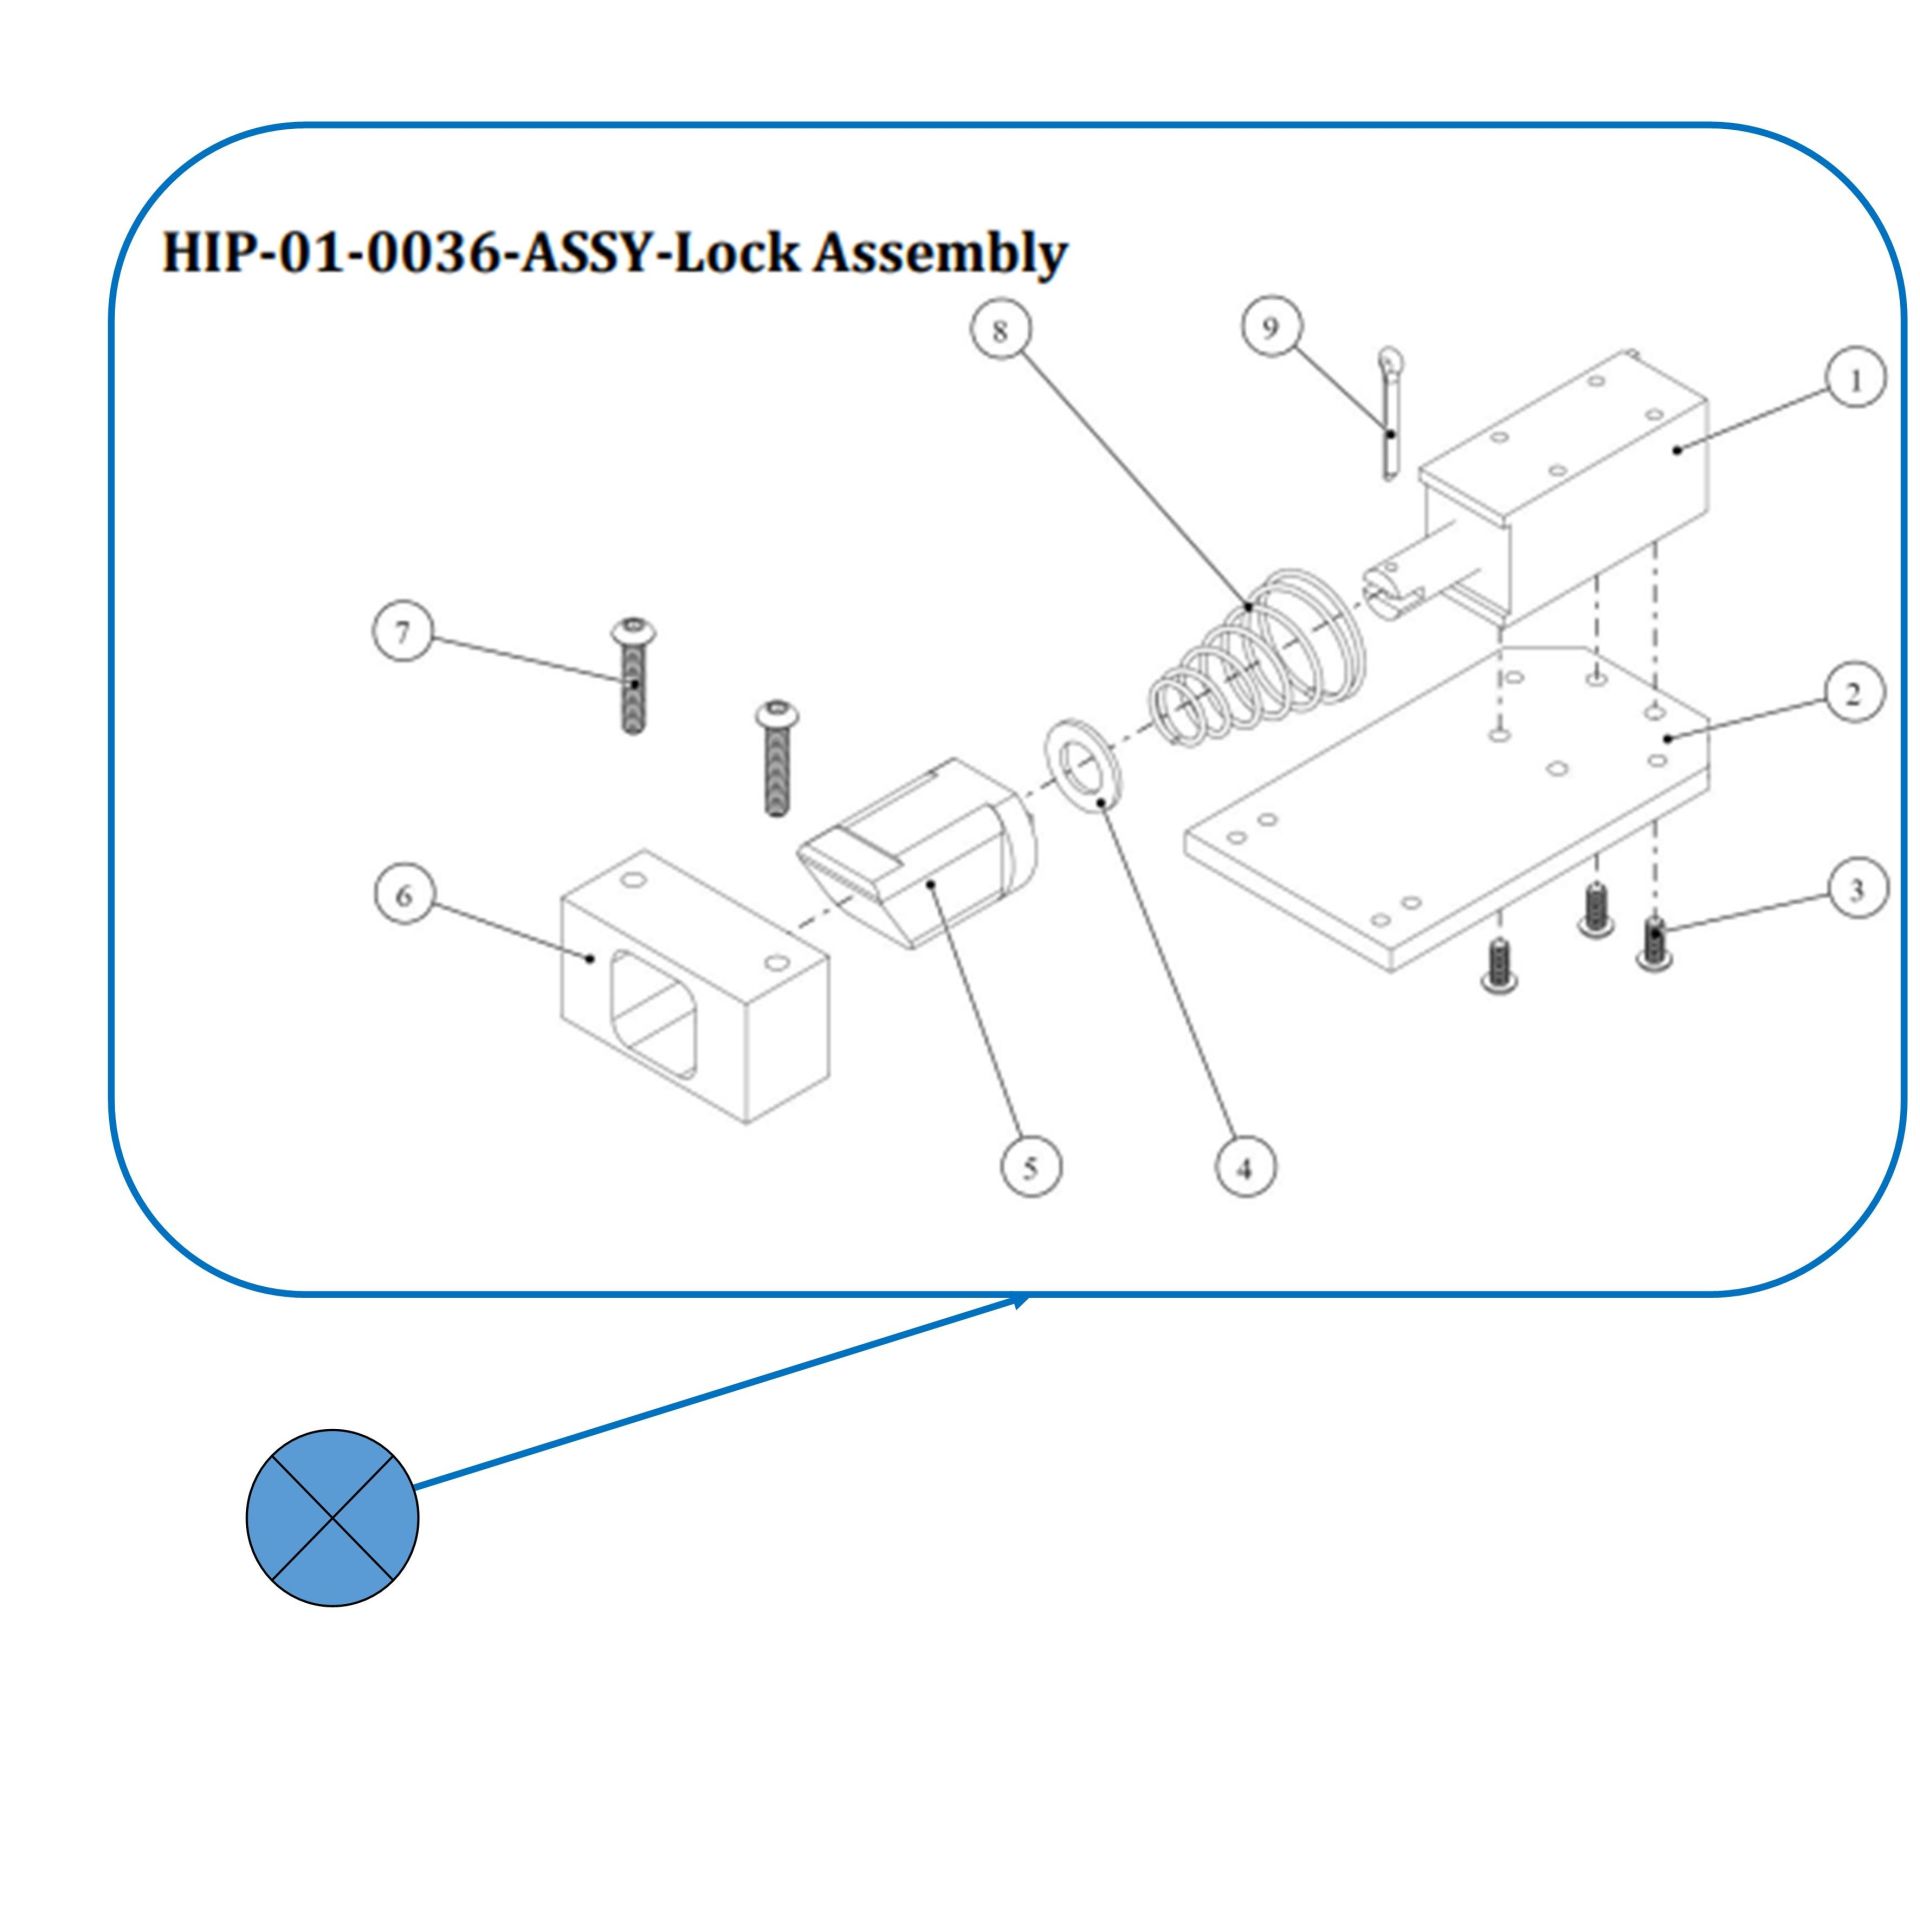 Assy-Lock Assembly_HIP-01-0036